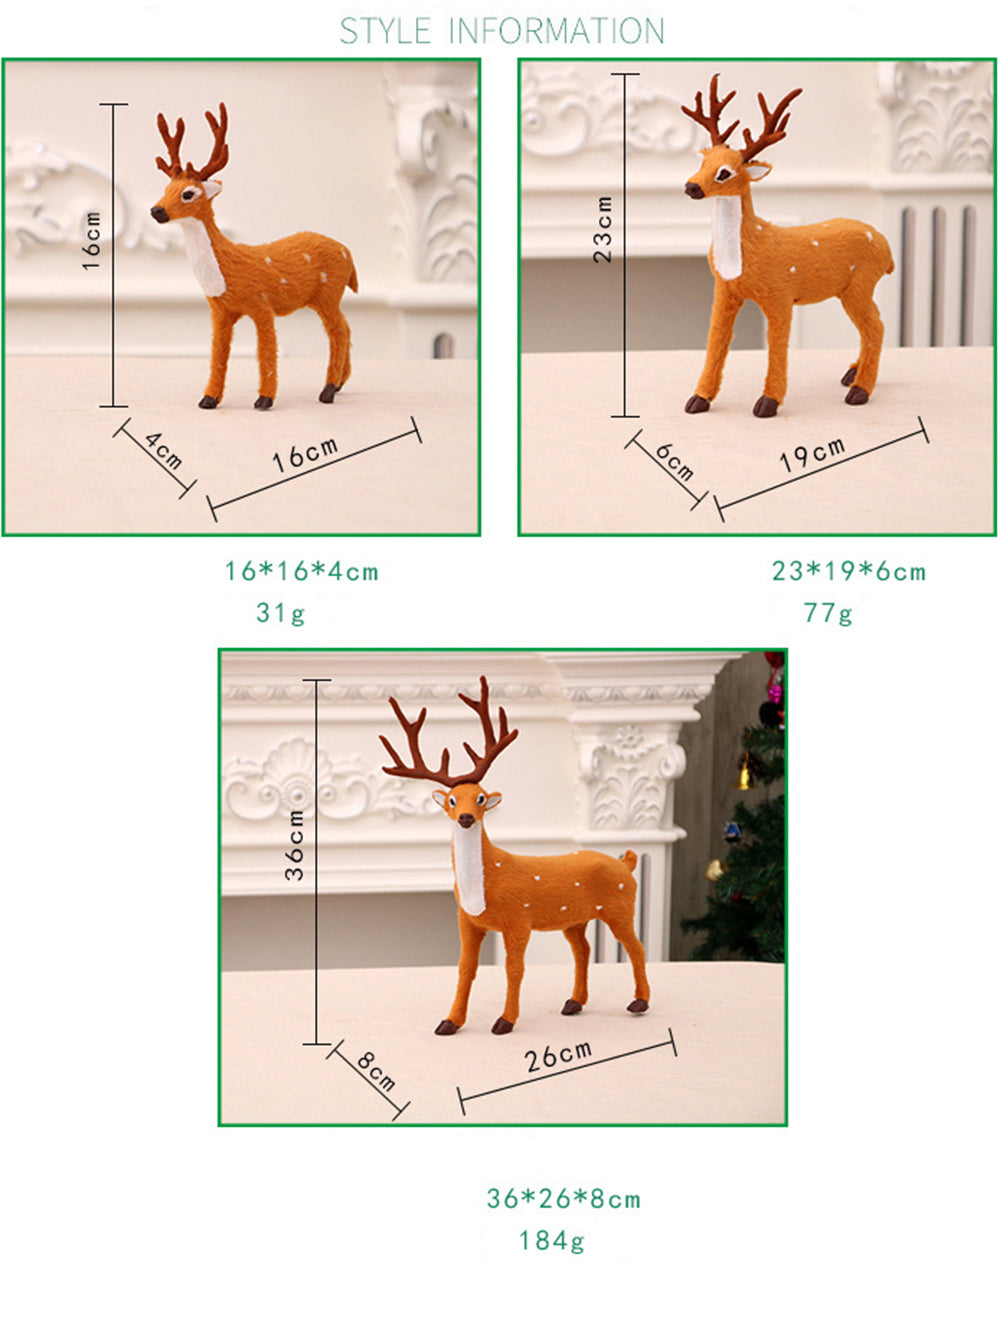 Julepynt Sika Deer Ornaments